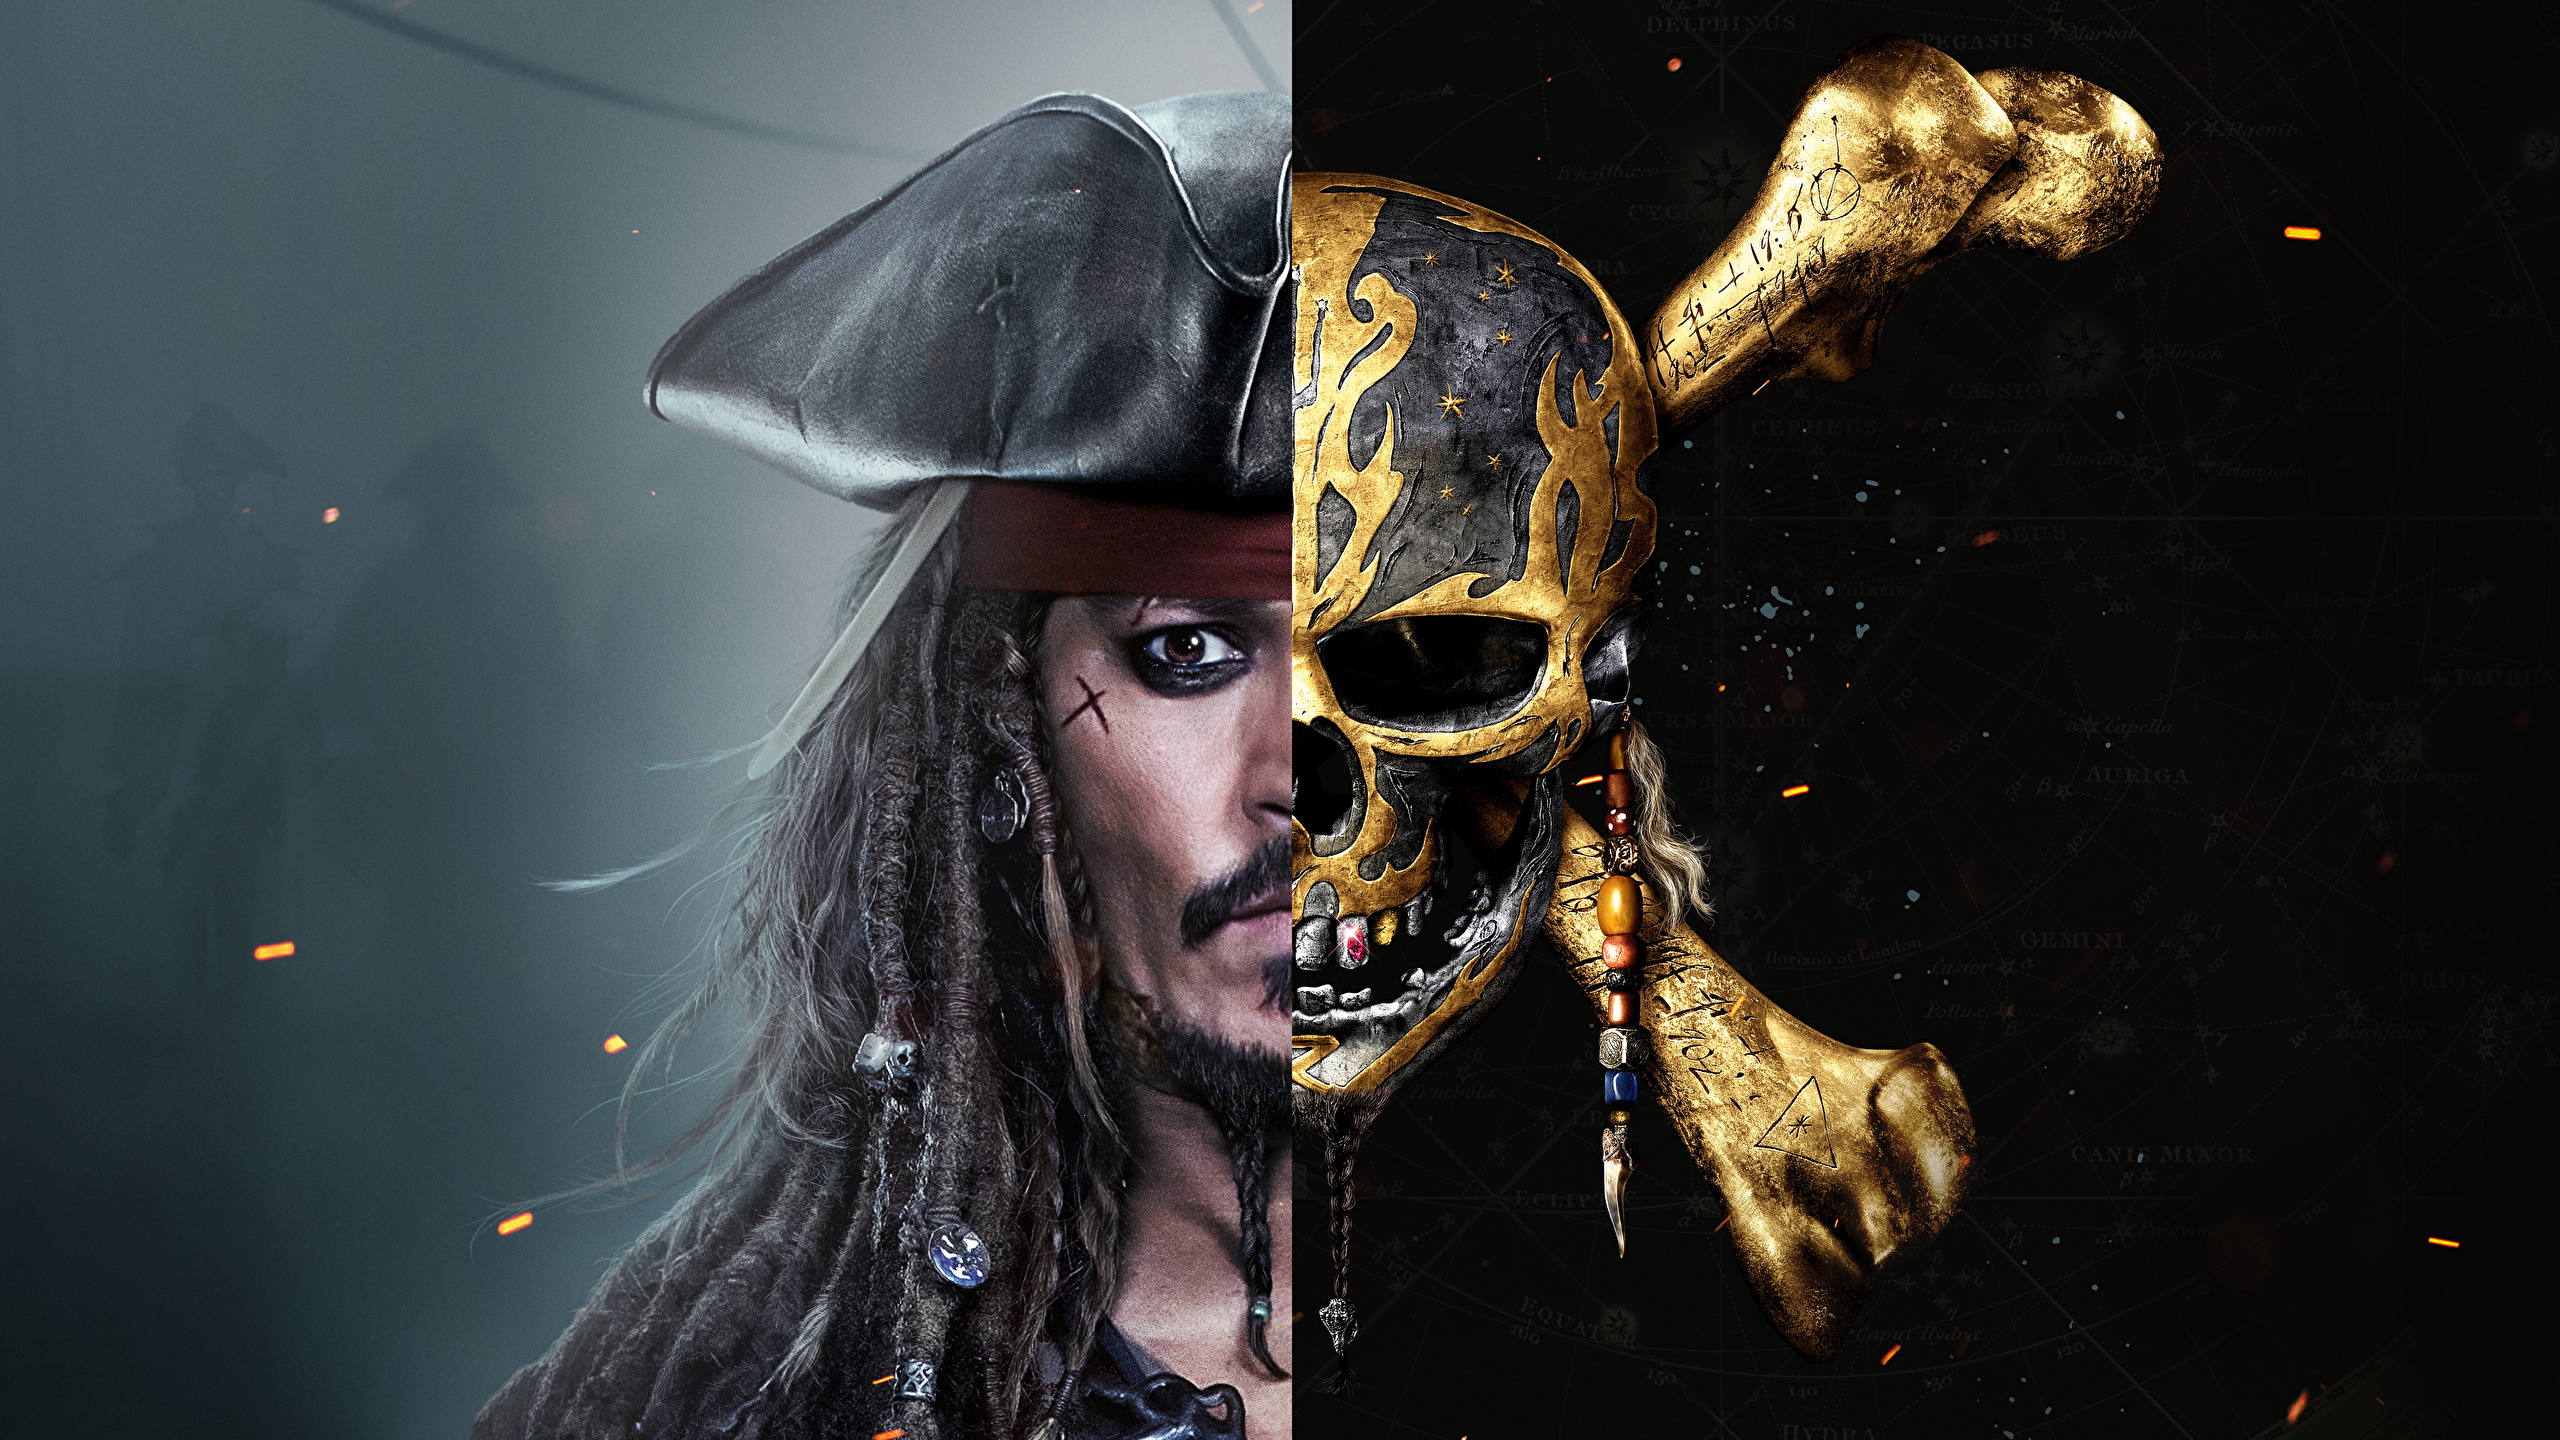 壁紙 2560x1440 パイレーツ オブ カリビアン 最後の海賊 ジョニー デップ 頭蓋骨 映画 有名人 ダウンロード 写真